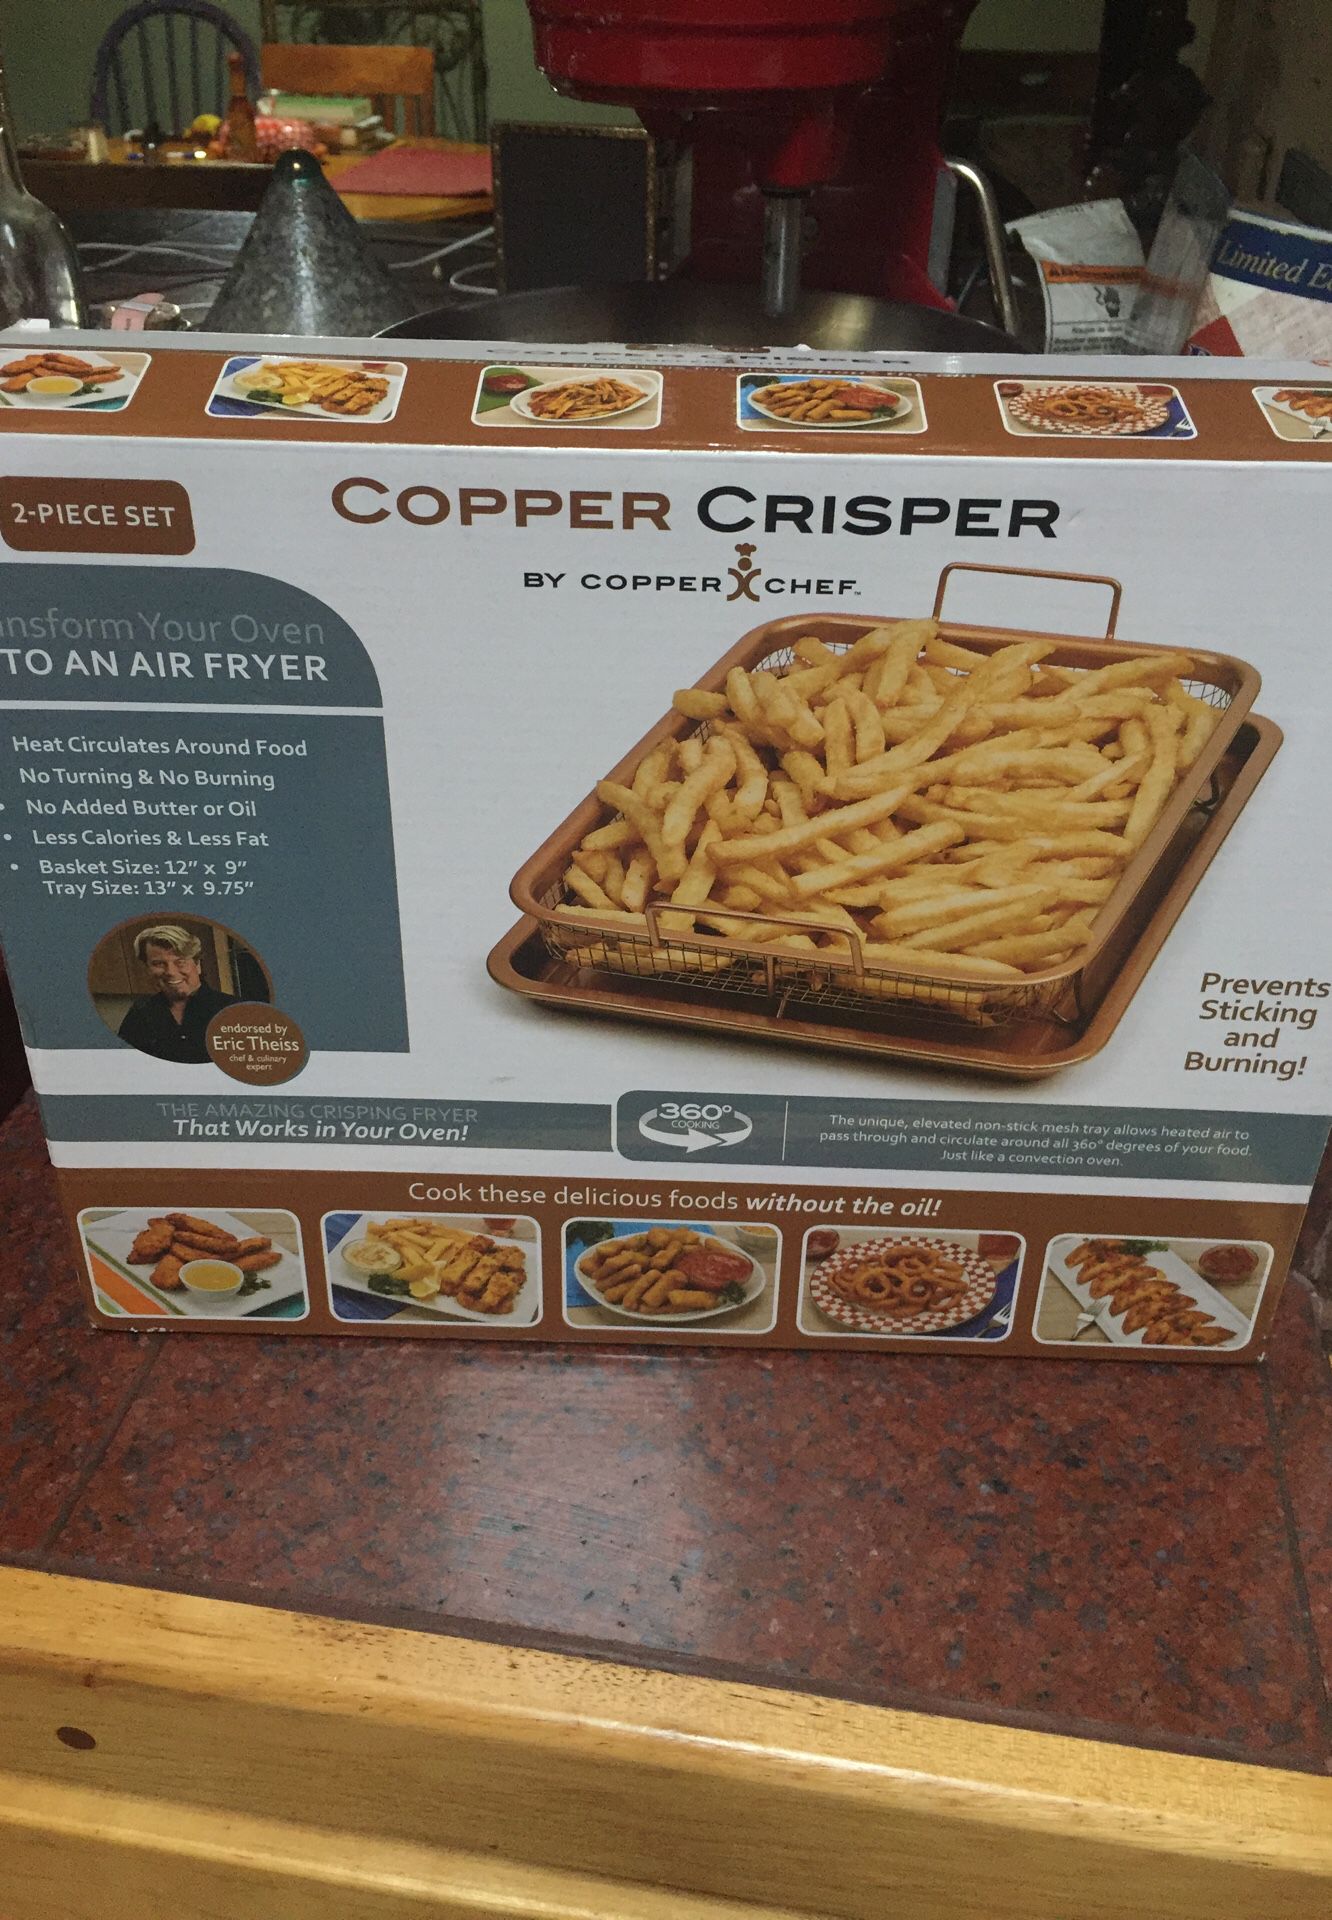 COPPER CRISPIER BY COPPER CHEF